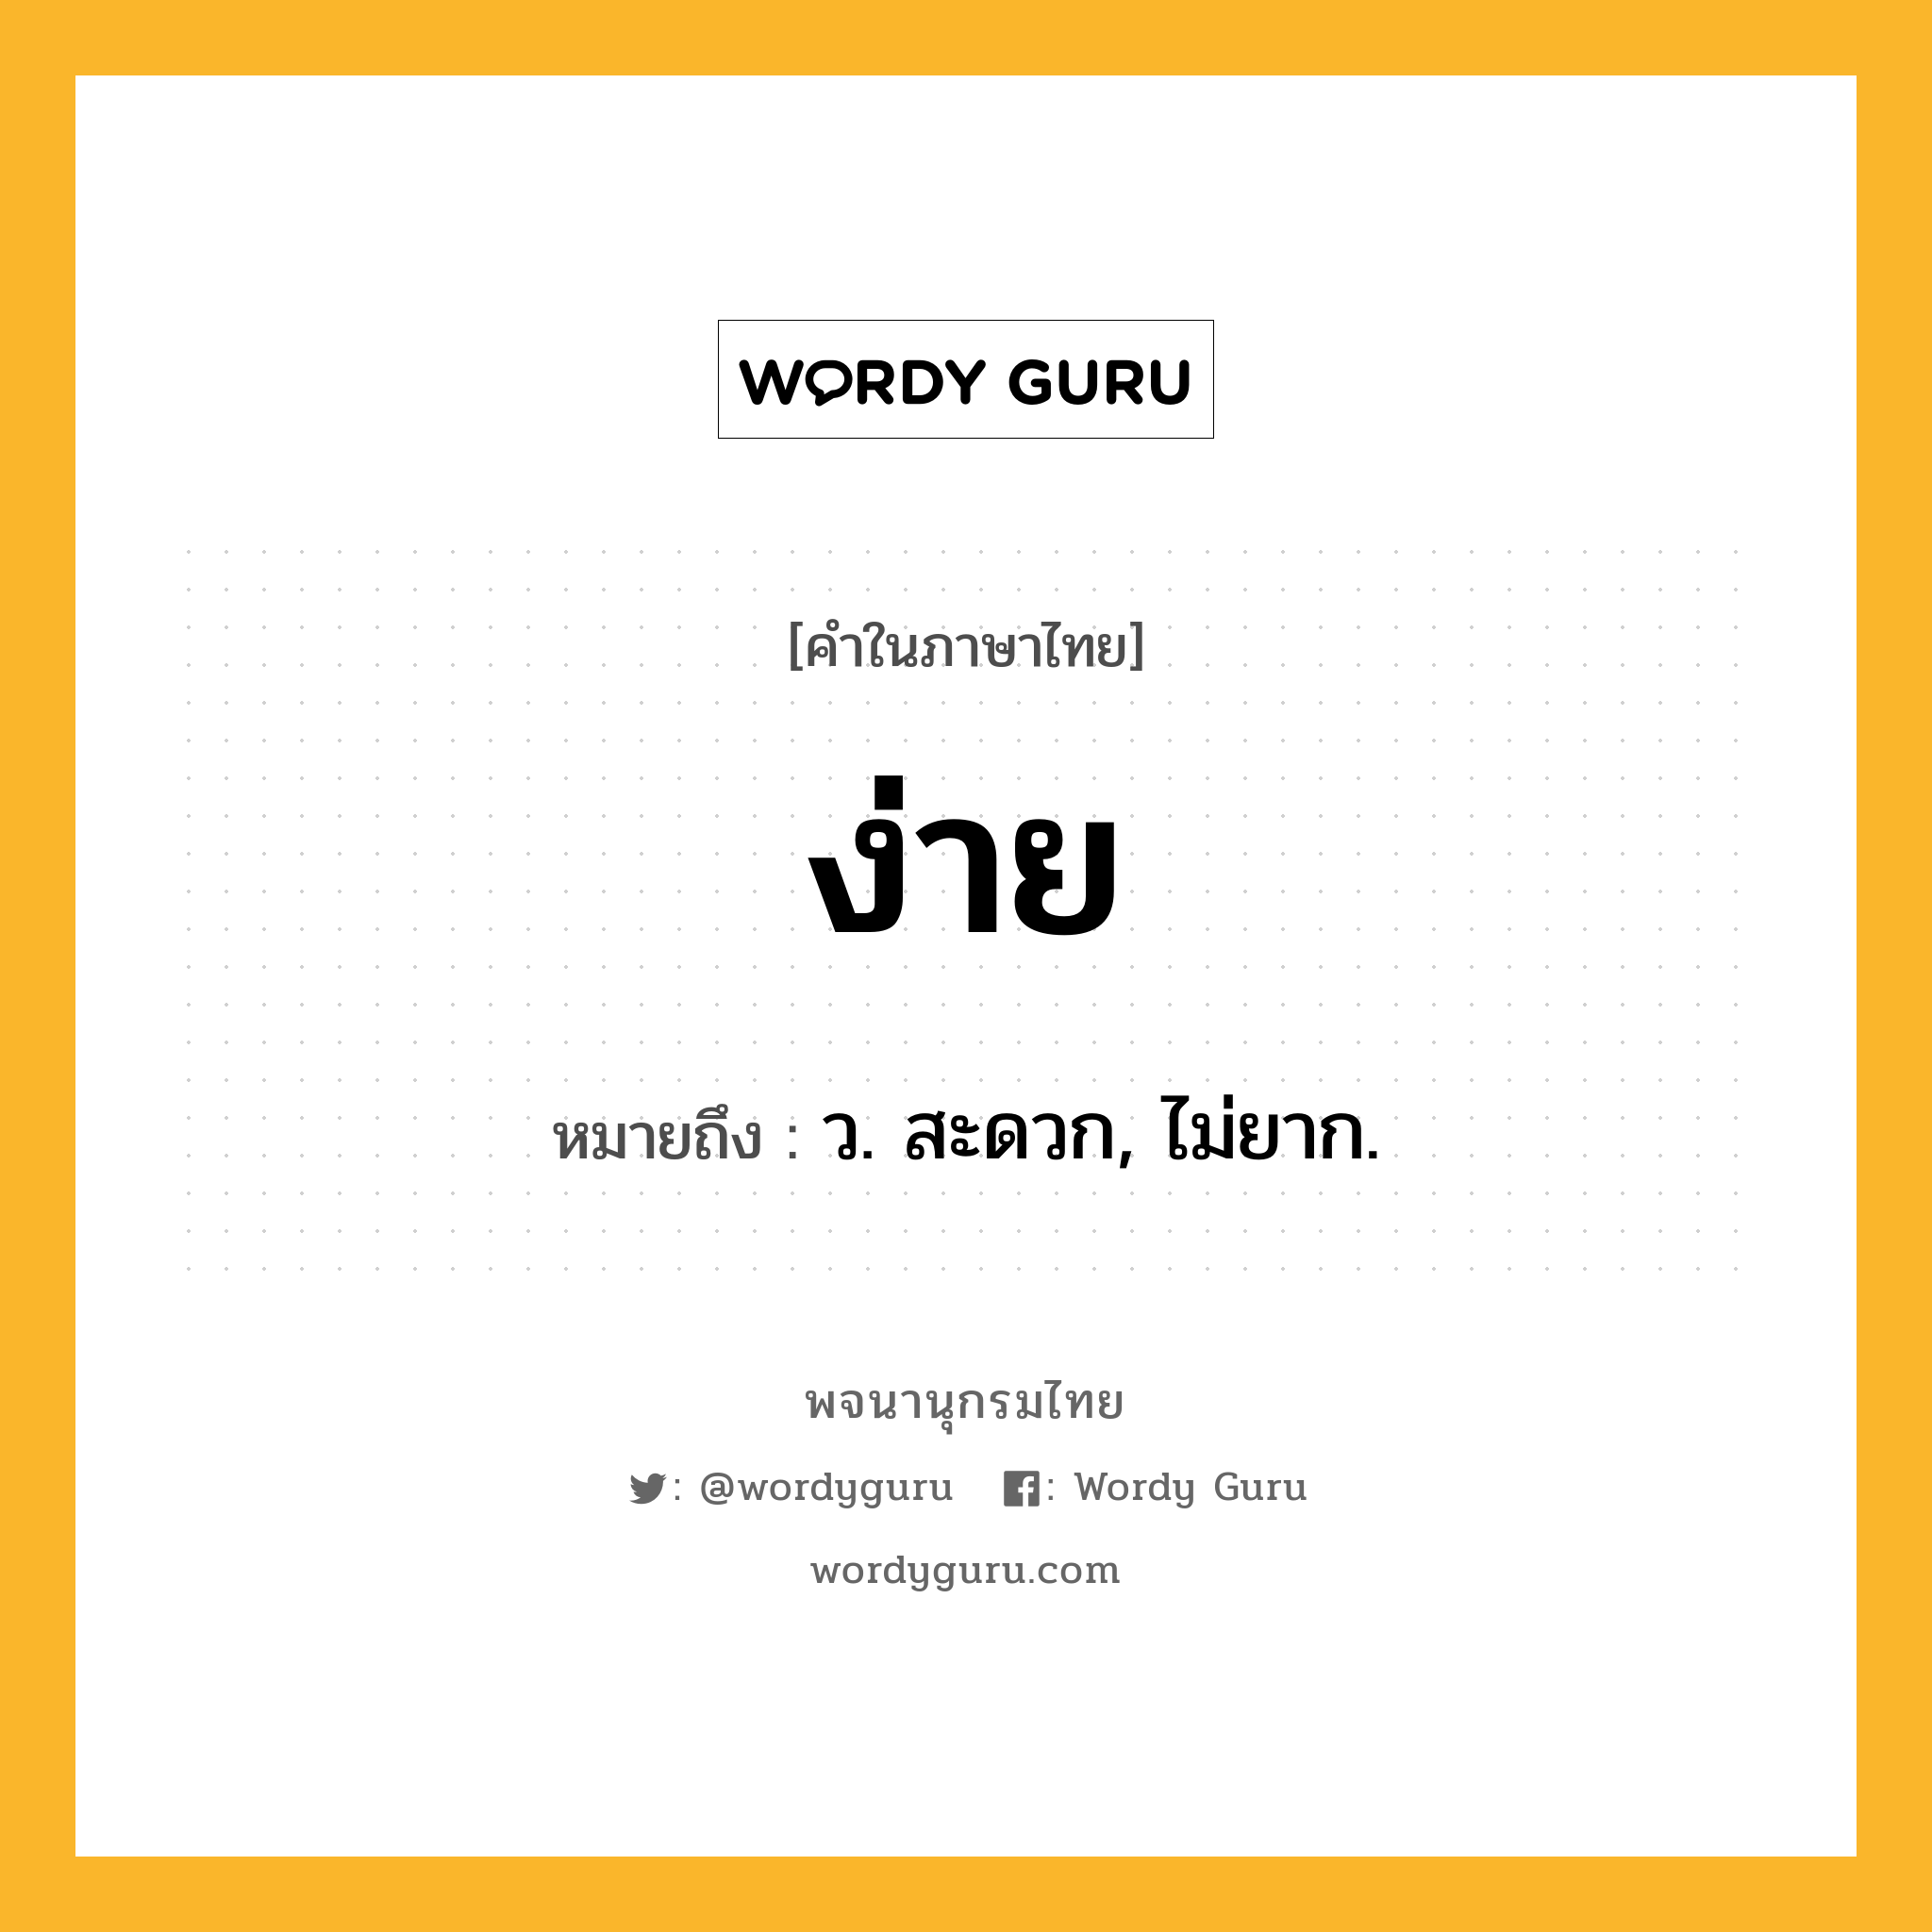 ง่าย หมายถึงอะไร?, คำในภาษาไทย ง่าย หมายถึง ว. สะดวก, ไม่ยาก.